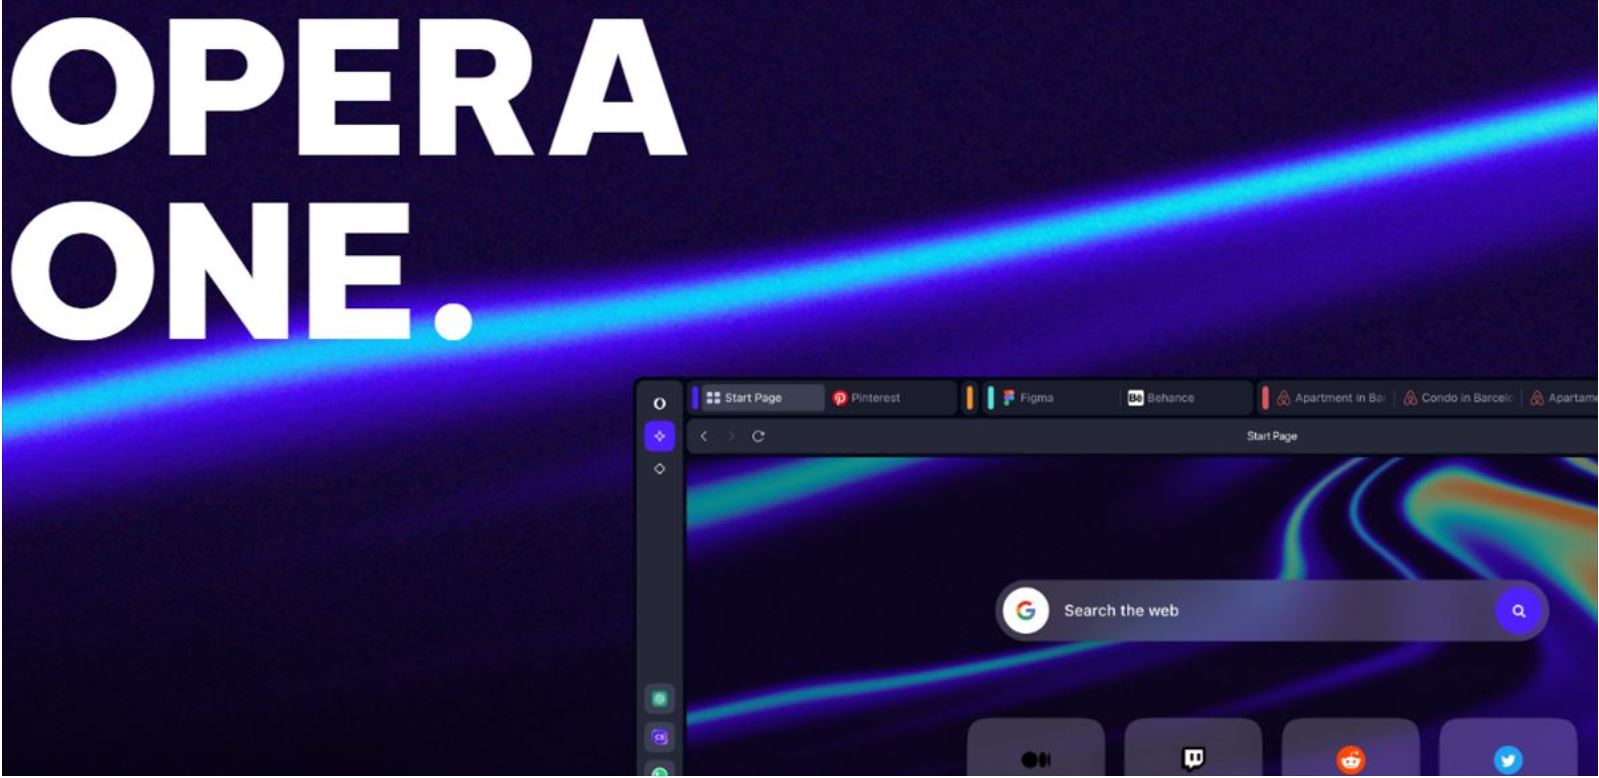 Opera renueva su navegador con la IA generativa y avanza Opera One